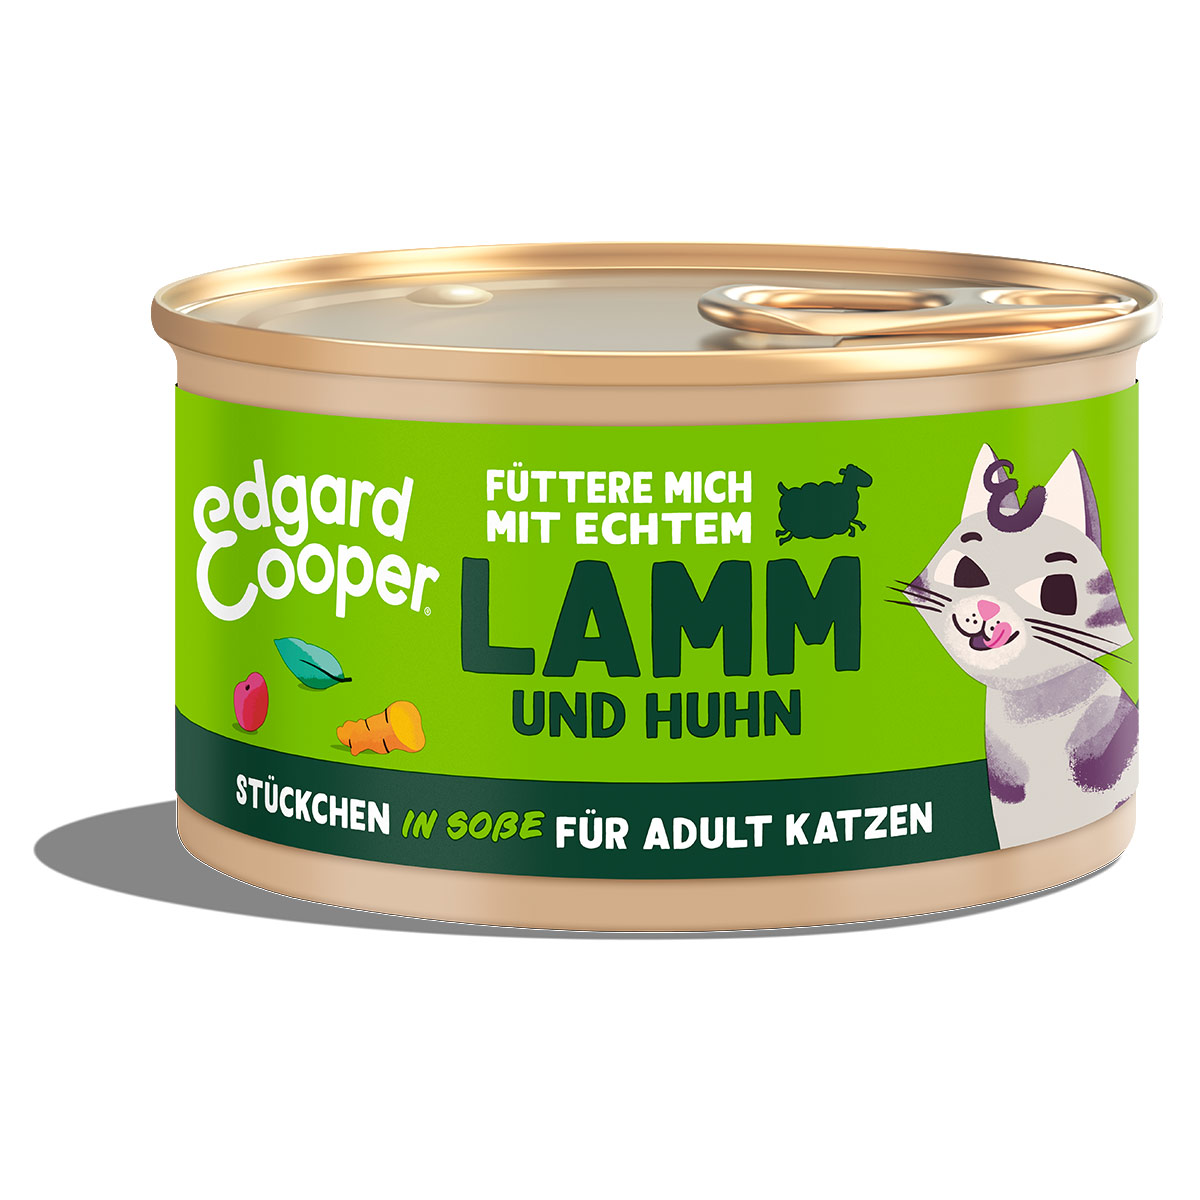 Edgard & Cooper Stückchen in Soße Lamm und Huhn 18x85g